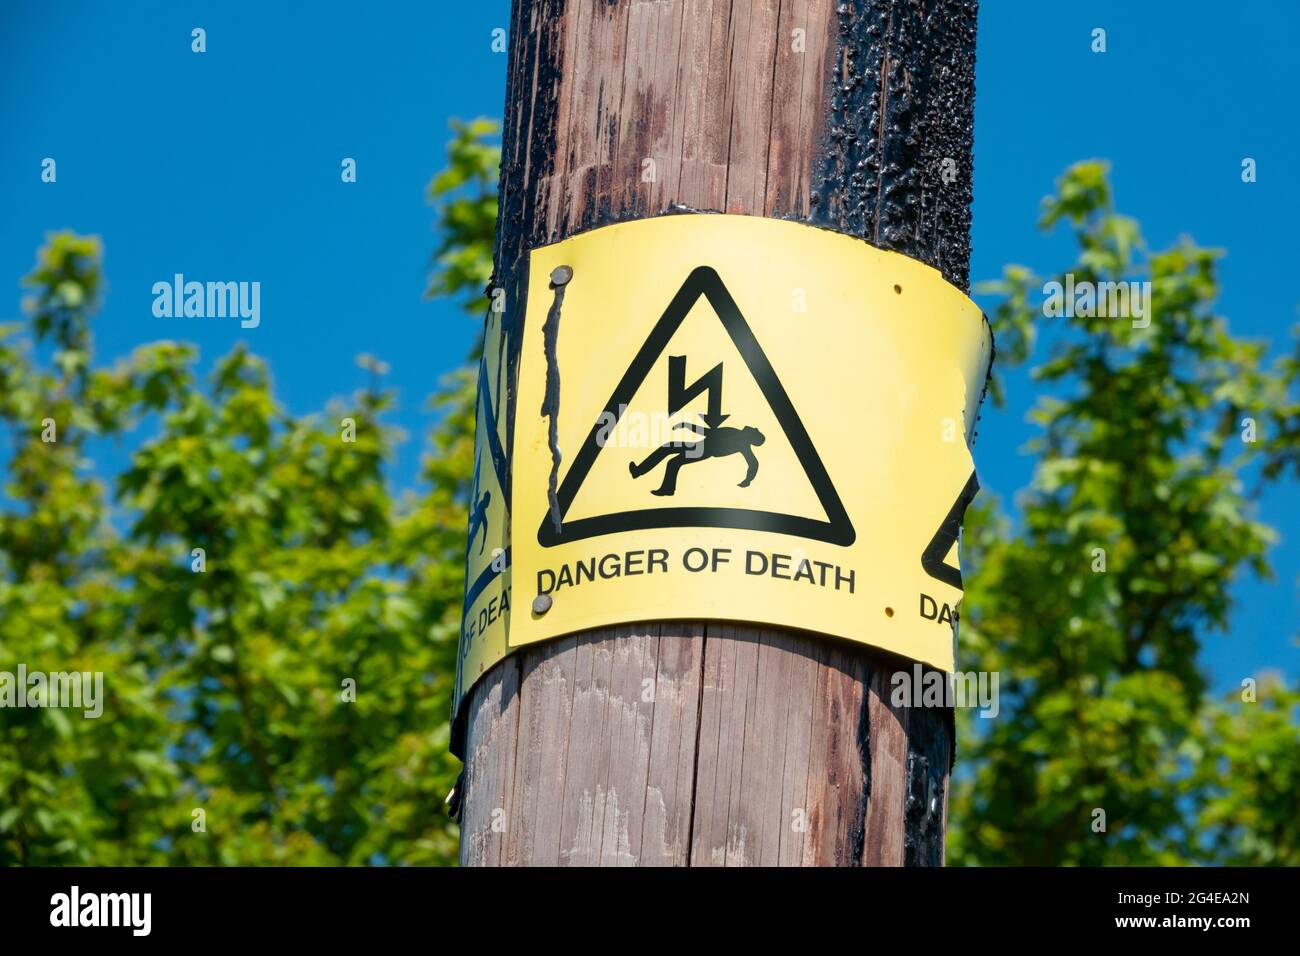 Danger de mort signe en jaune et noir sur un poteau télégraphique en bois avec un ciel bleu vivd dans le fond et une haie verte dans le foyer mou Banque D'Images